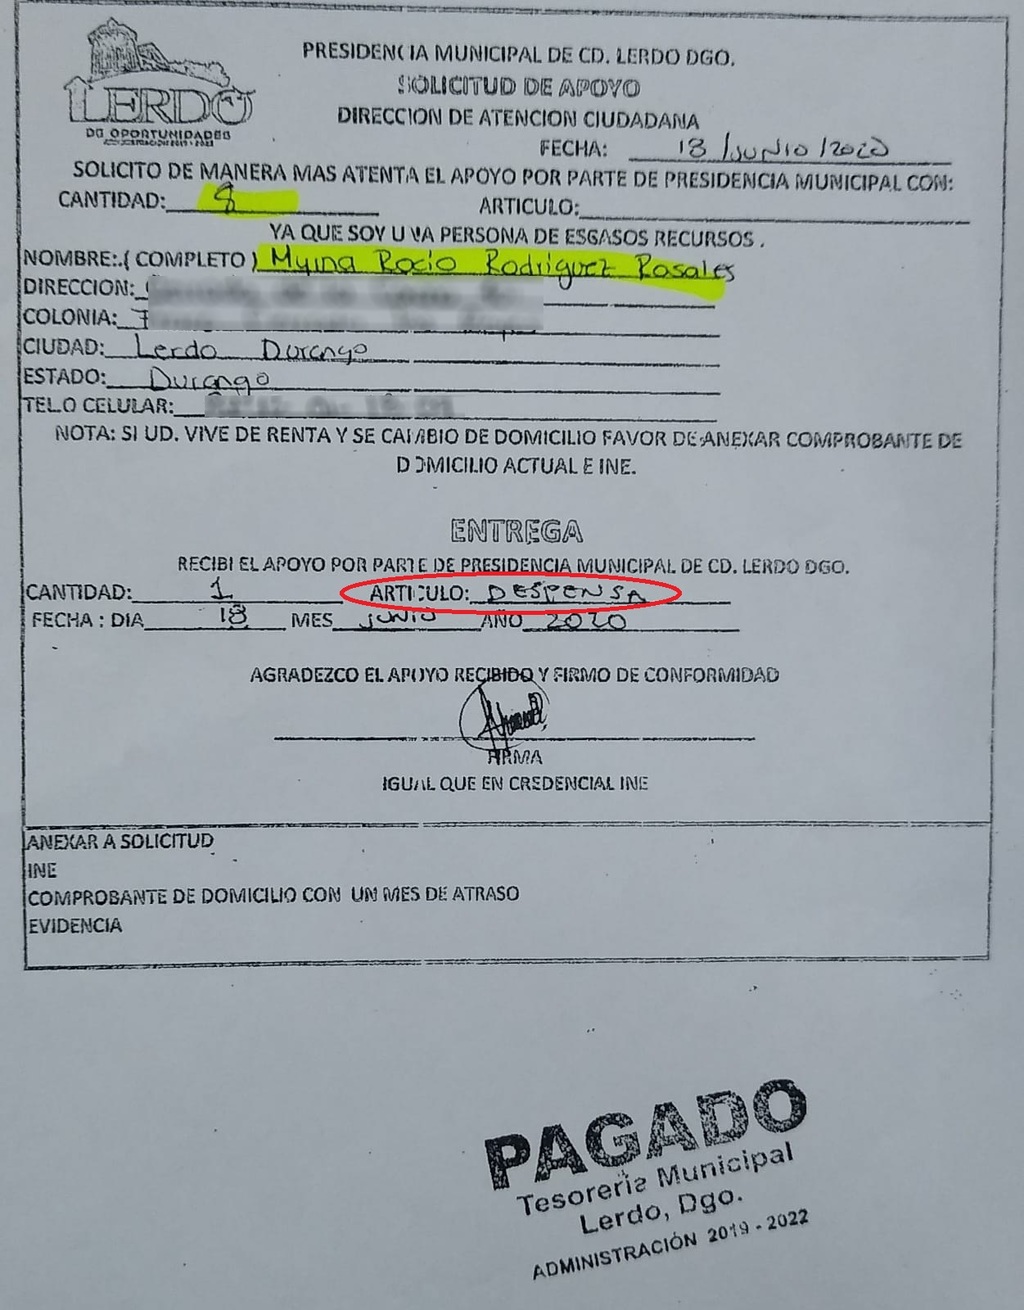 Documento firmado por la funcionaria Myrna Rocío Rodríguez, donde se acredita que recibió despensas de parte del Municipio.